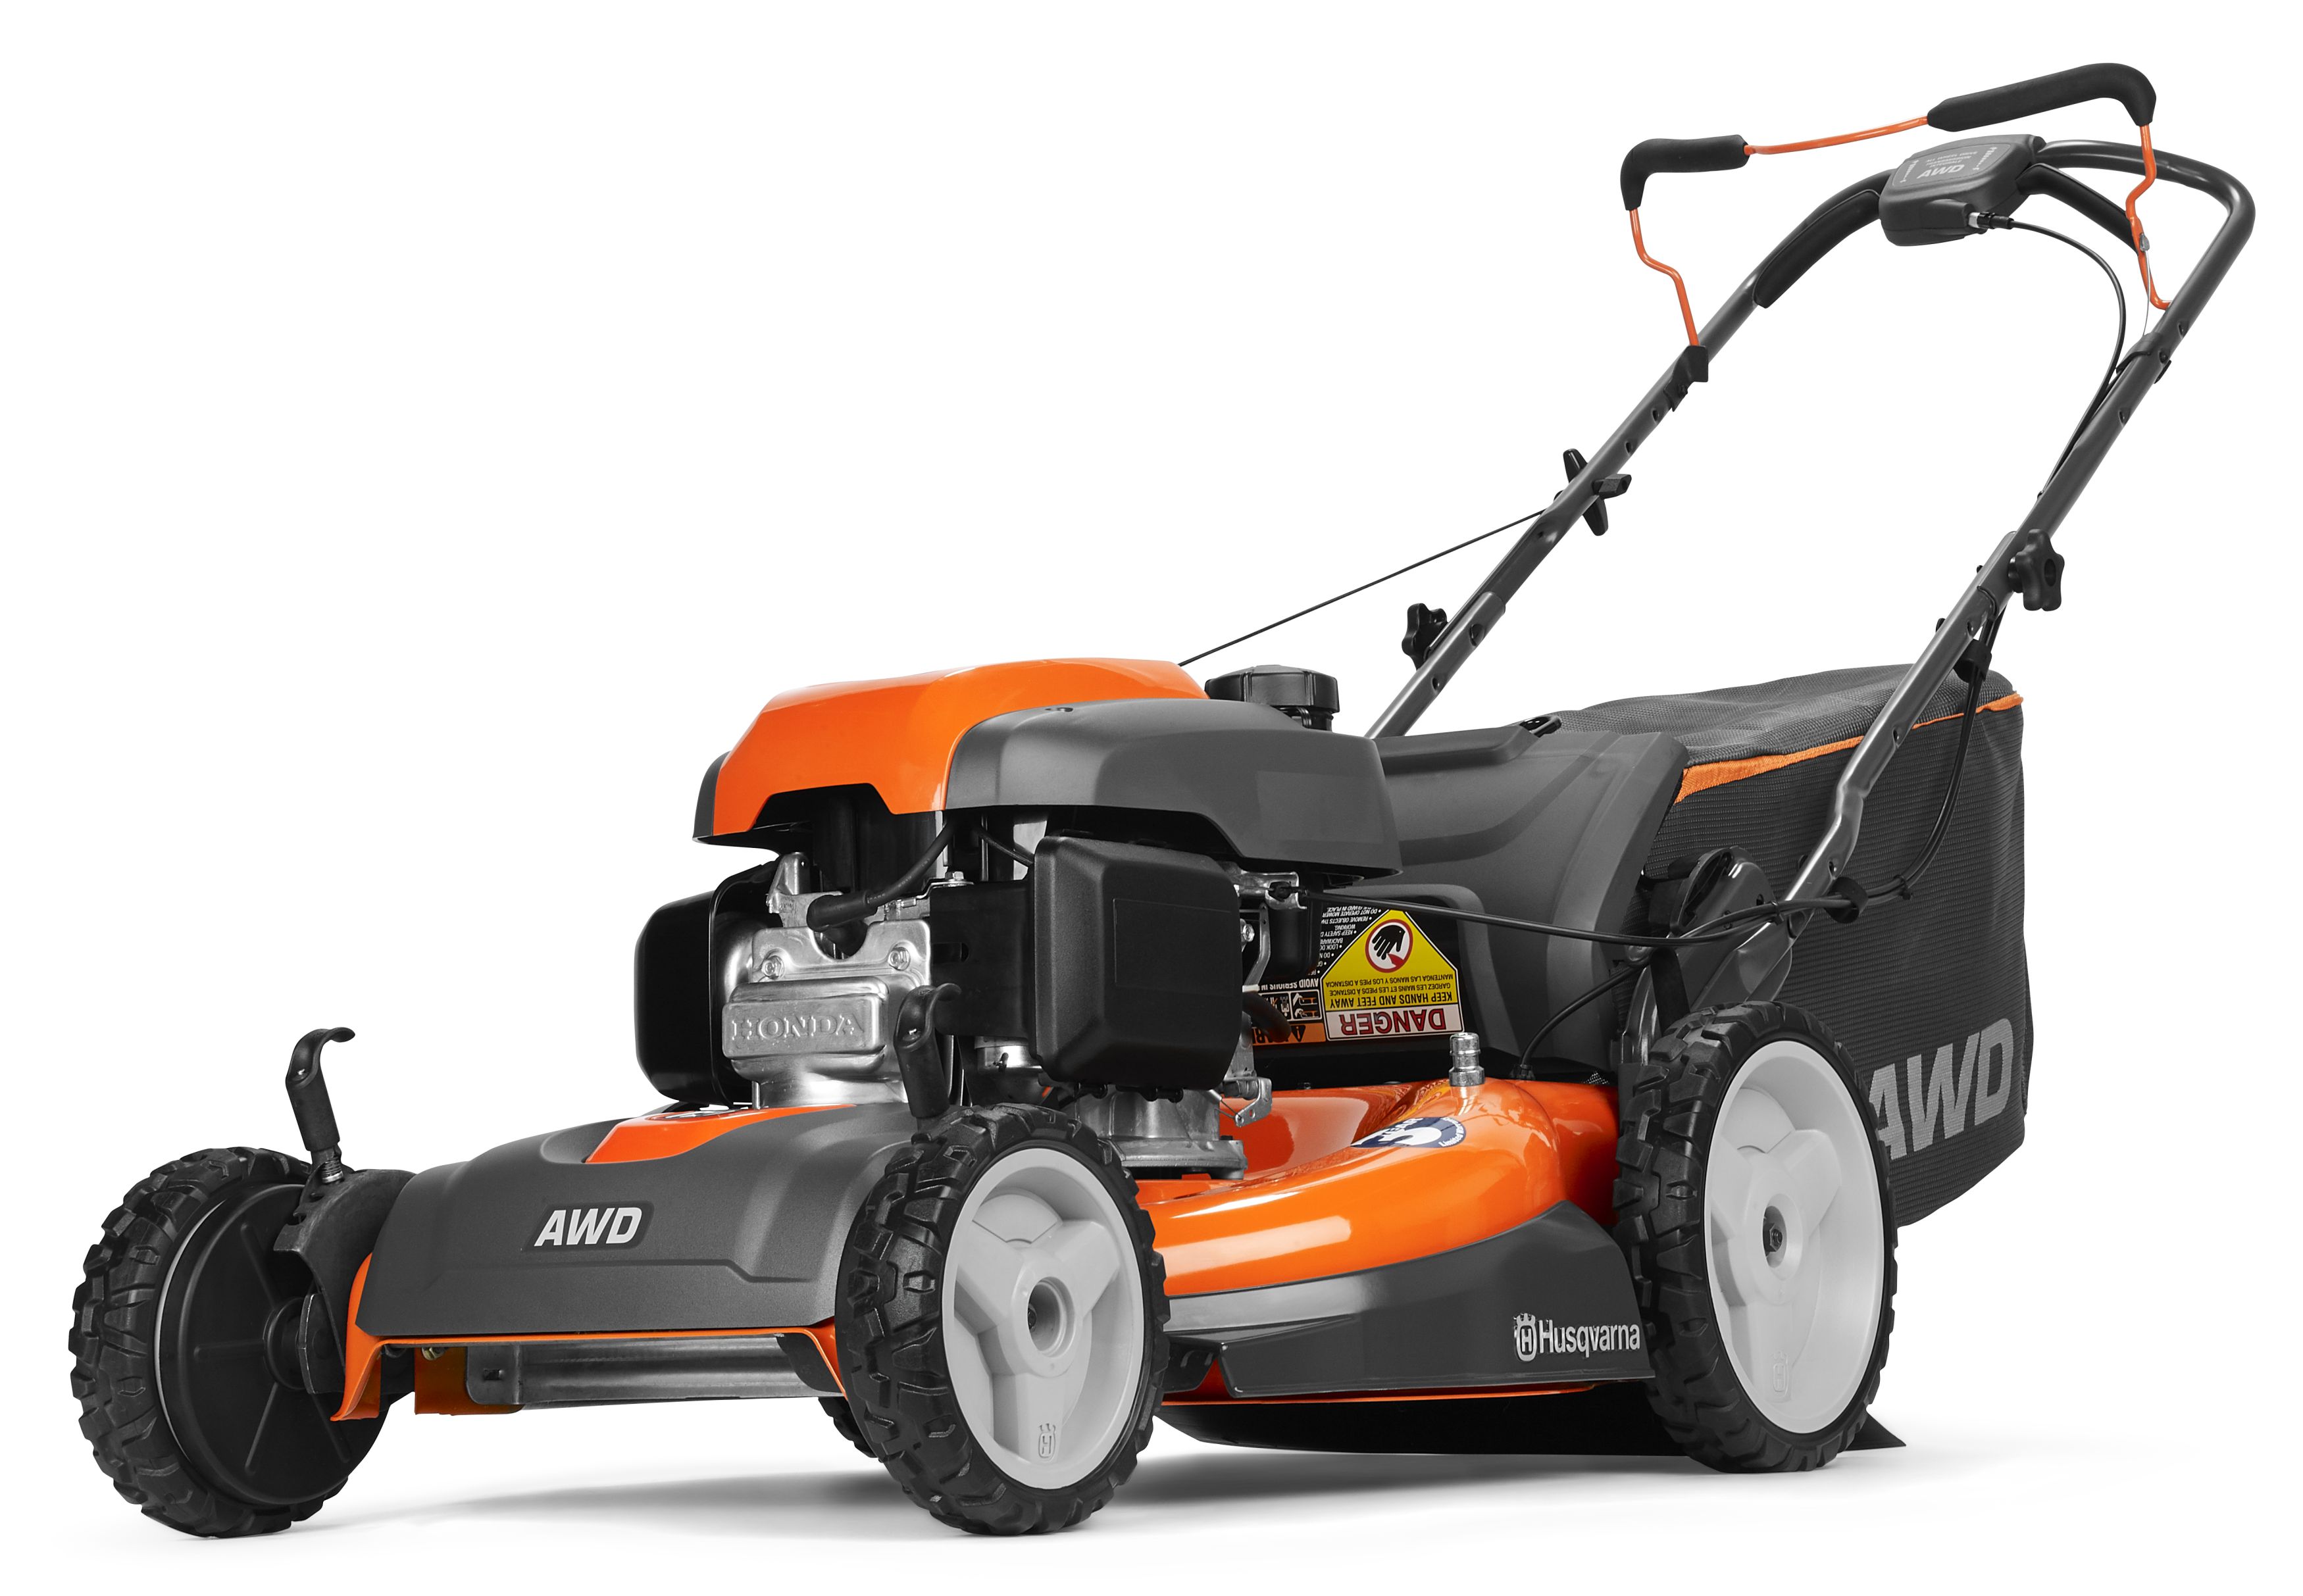 husqvarna-967924801-42-in-zero-turn-lawn-mower-with-mulching-capability